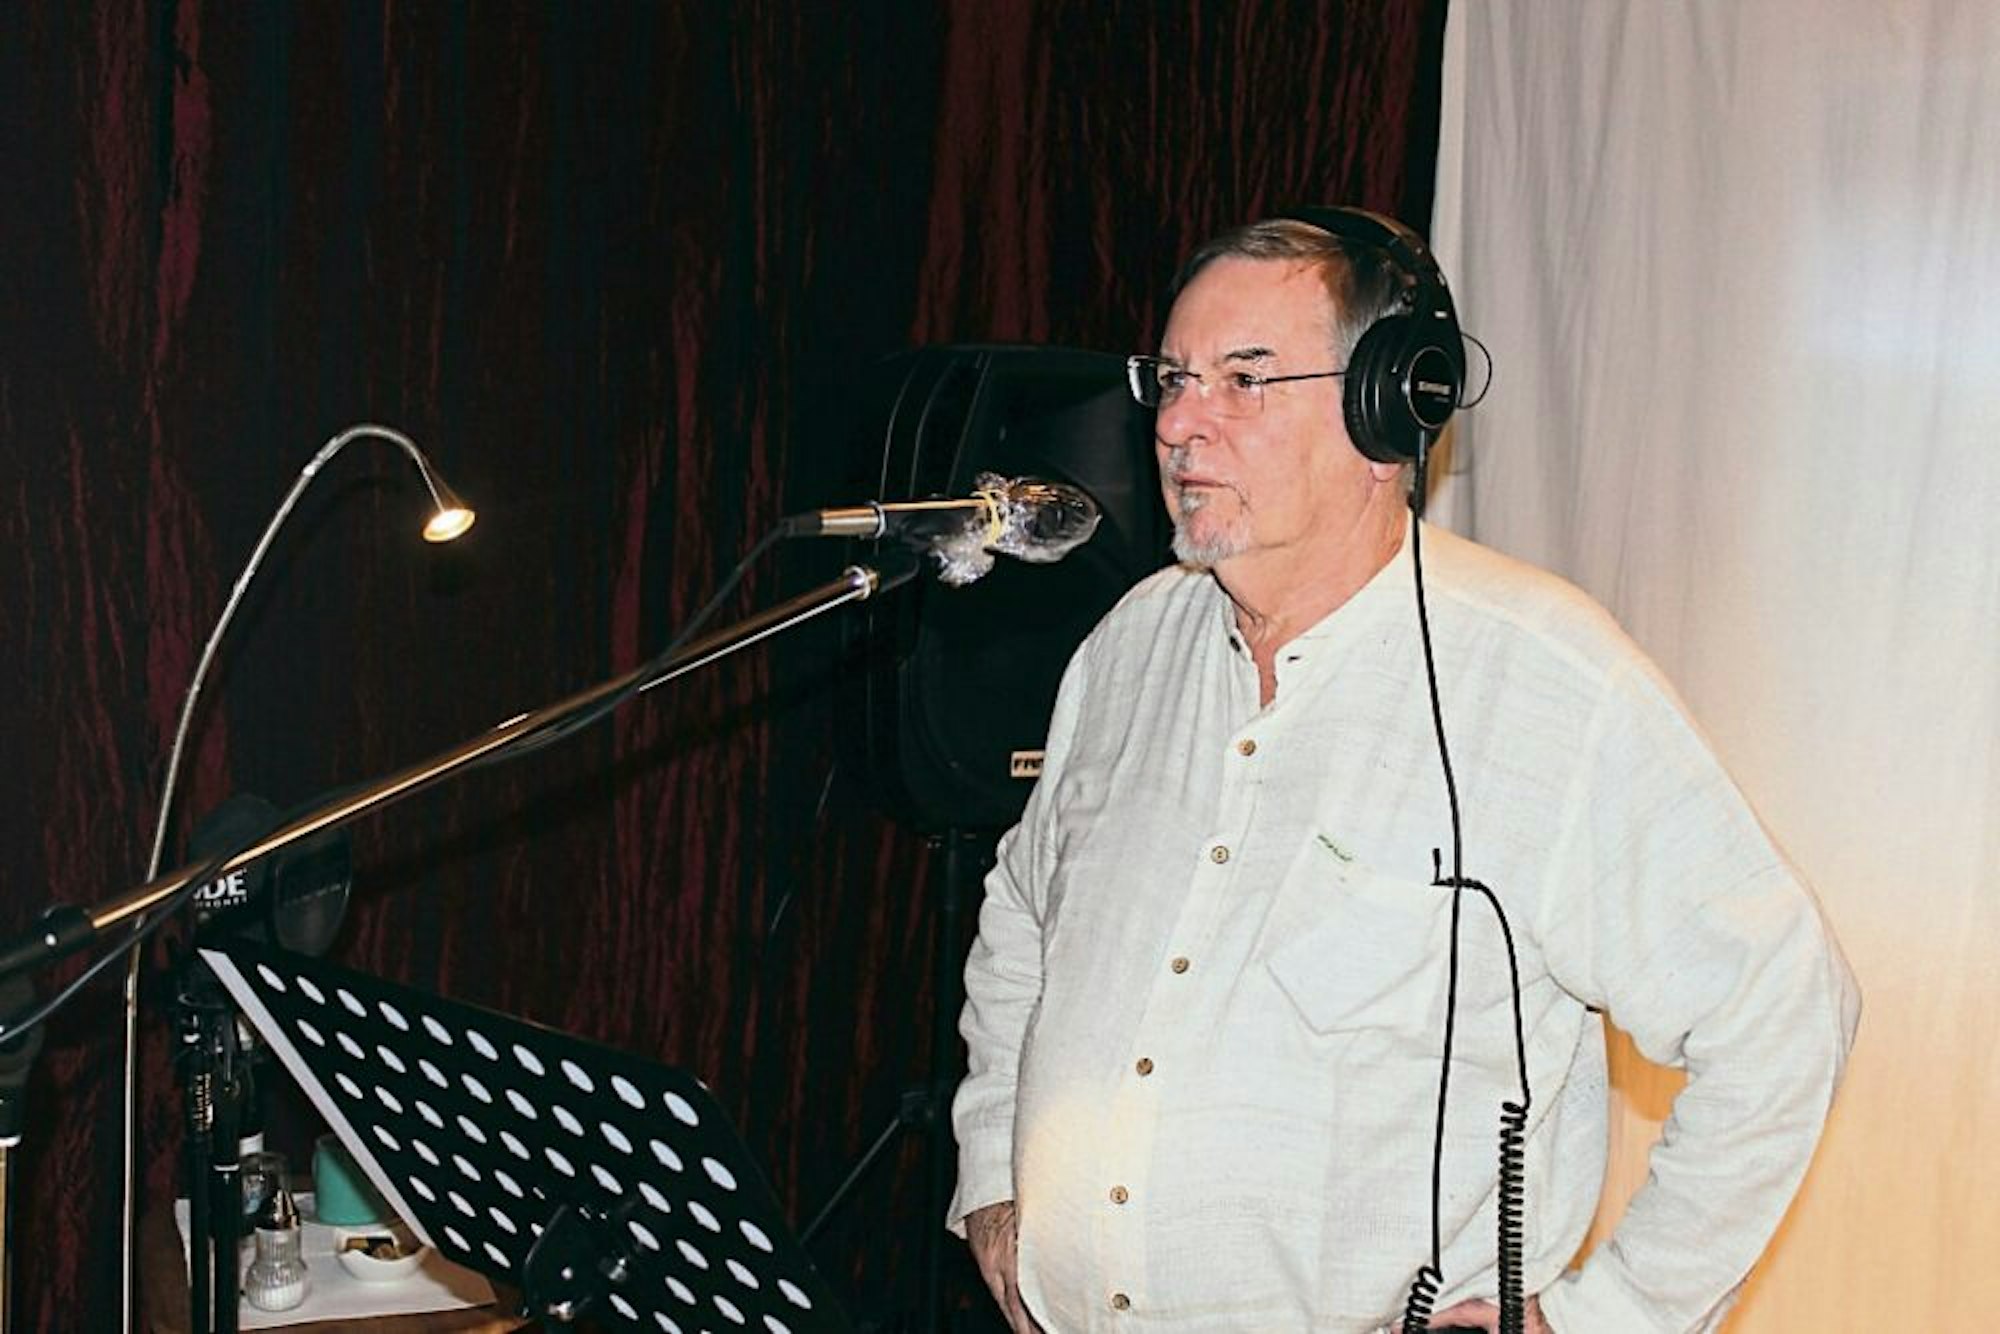 Auch der Vorsitzende Uwe Stolz sang im Studio.